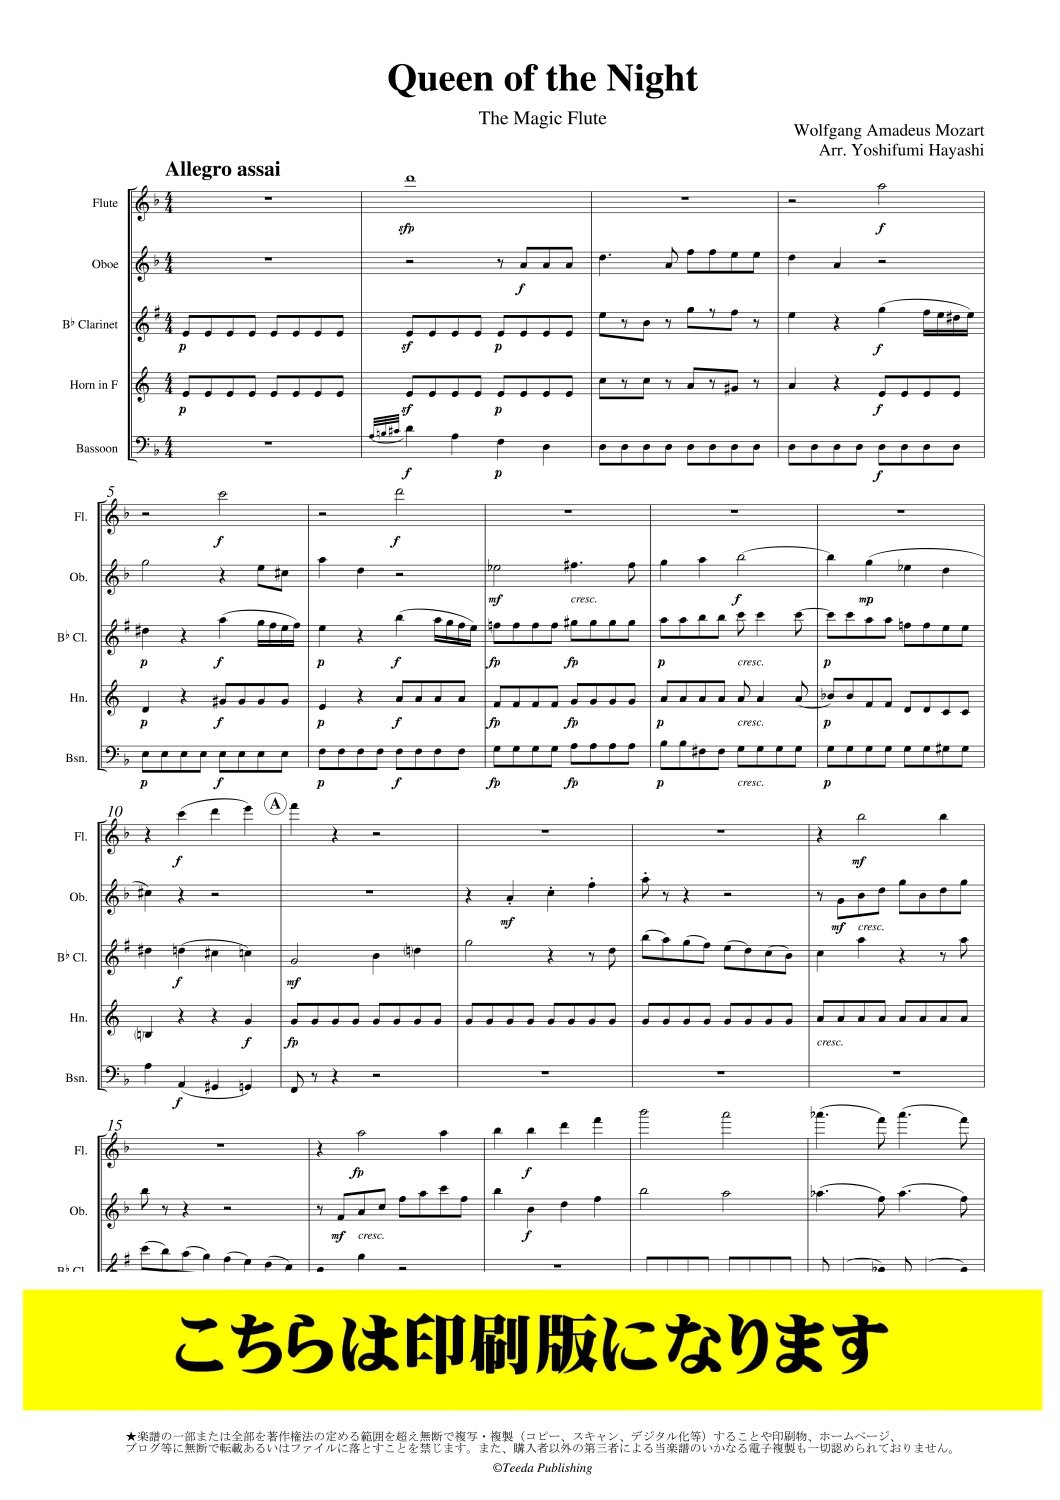 木管5重奏】オペラ「魔笛」より 夜の女王のアリア（モーツァルト/林佳史）